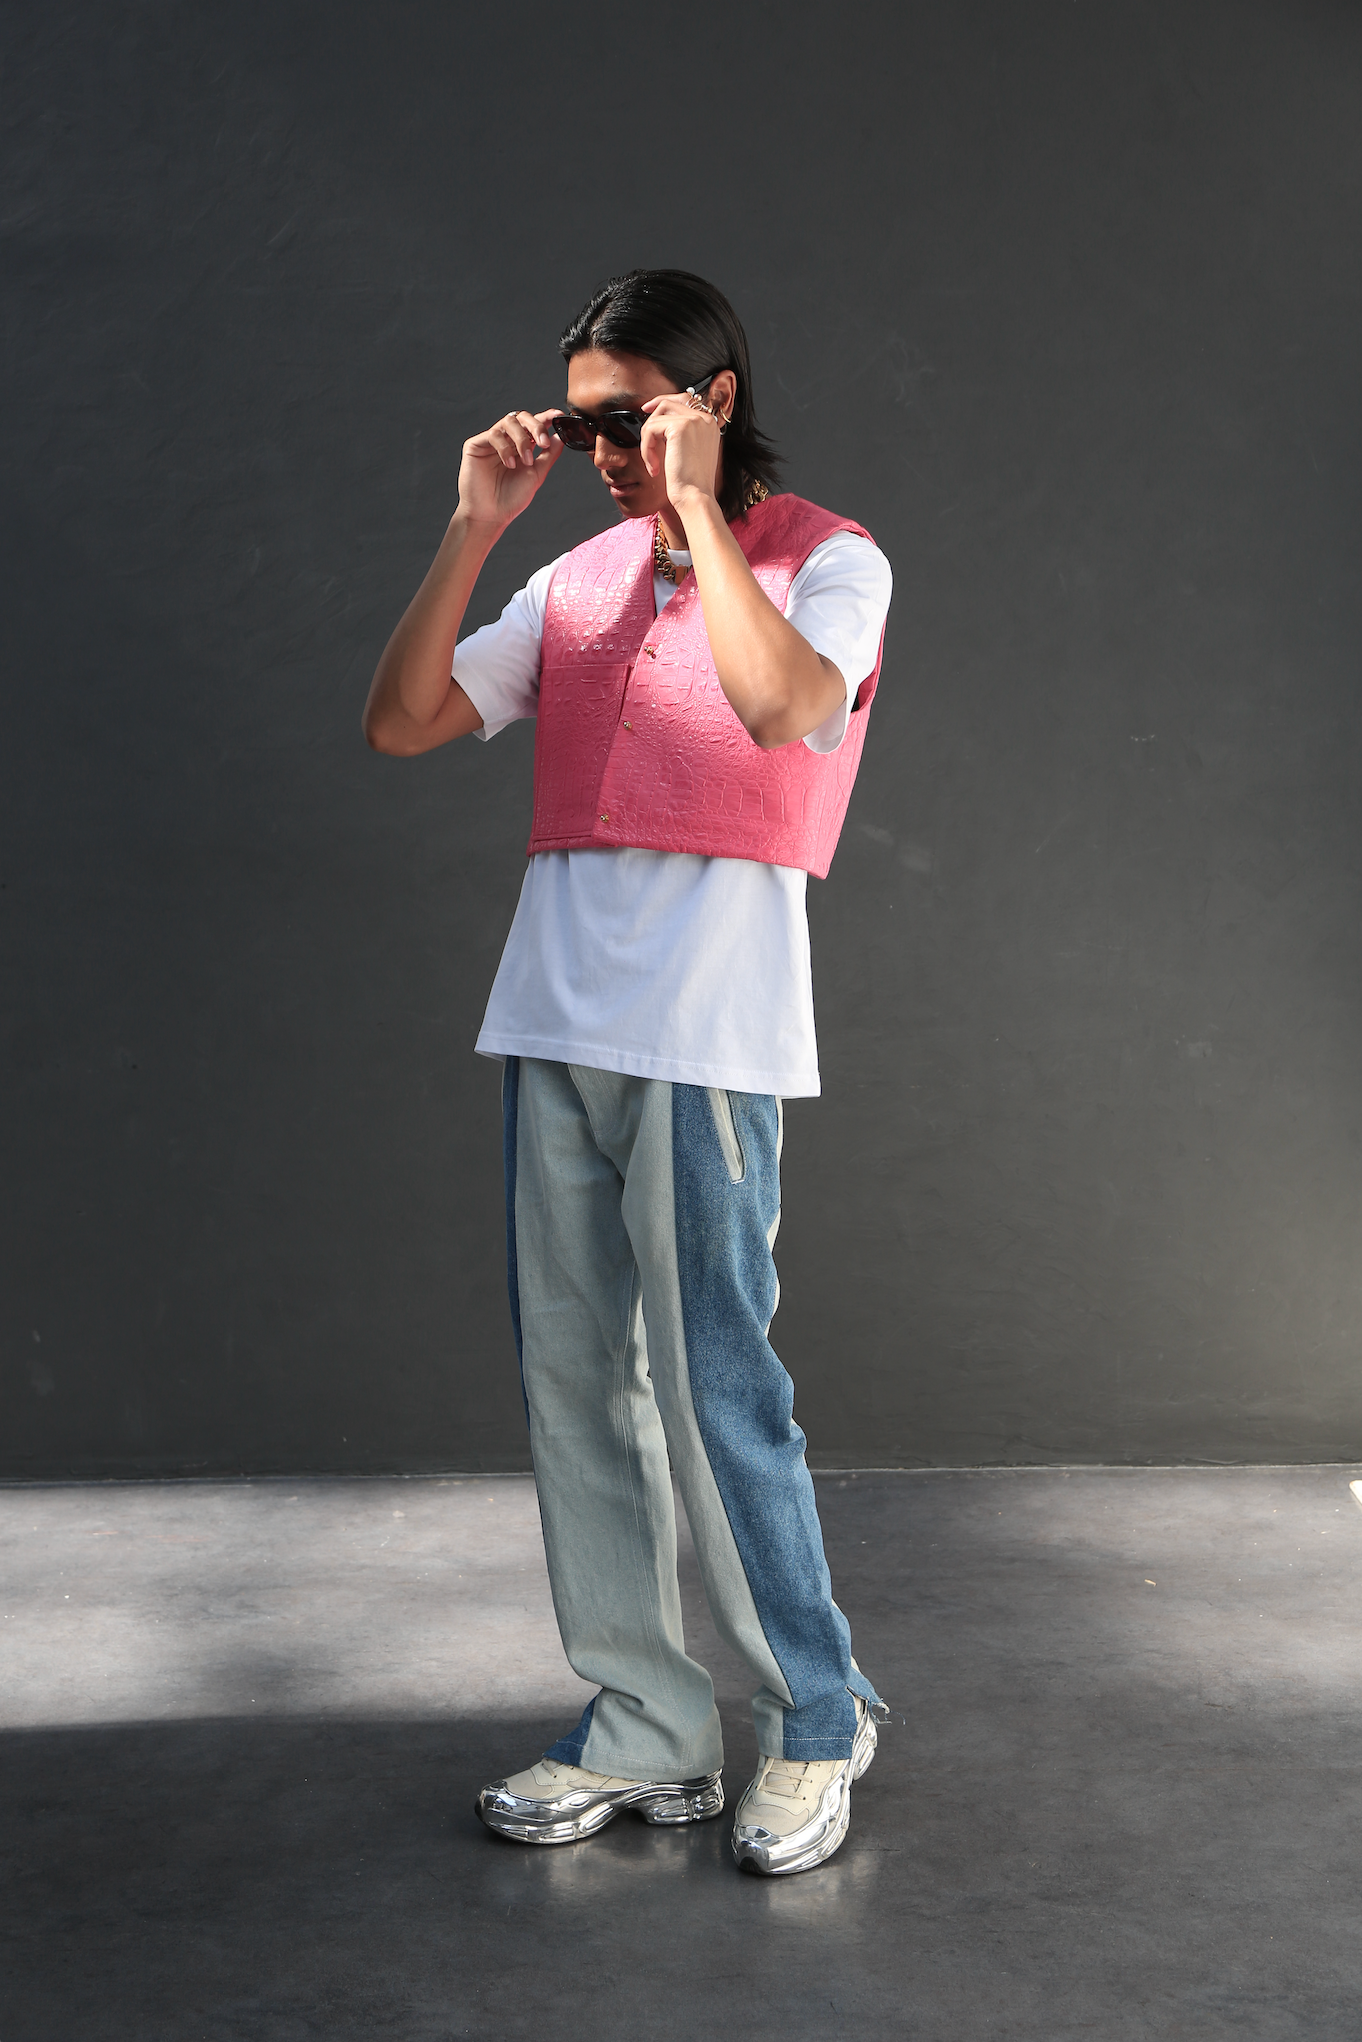 Gilet Charlie Rose de luxe oversize marque française france homme femme classique mixte unisexe de qualité bio haute couture prêt-à-porter streetwear vêtement textile de qualité épais sans manches avec pochette rembourré.